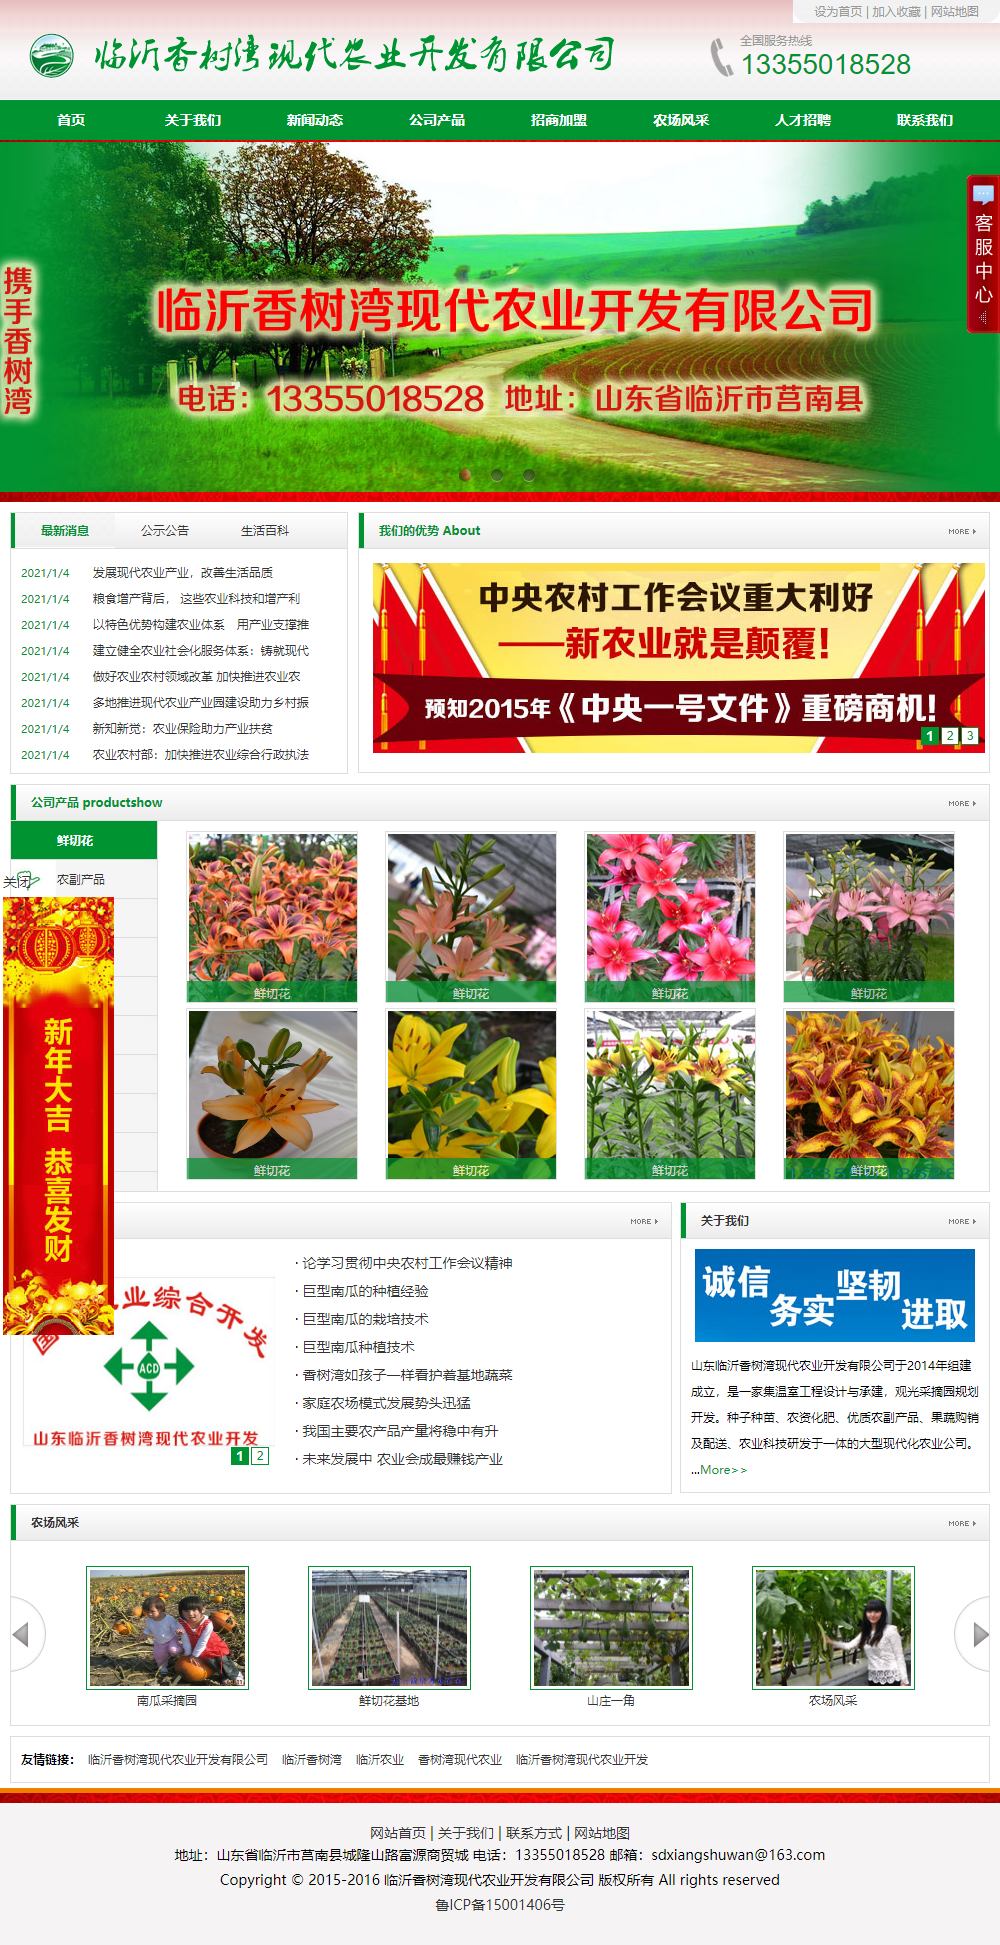 临沂香树湾现代农业开发有限公司网站案例